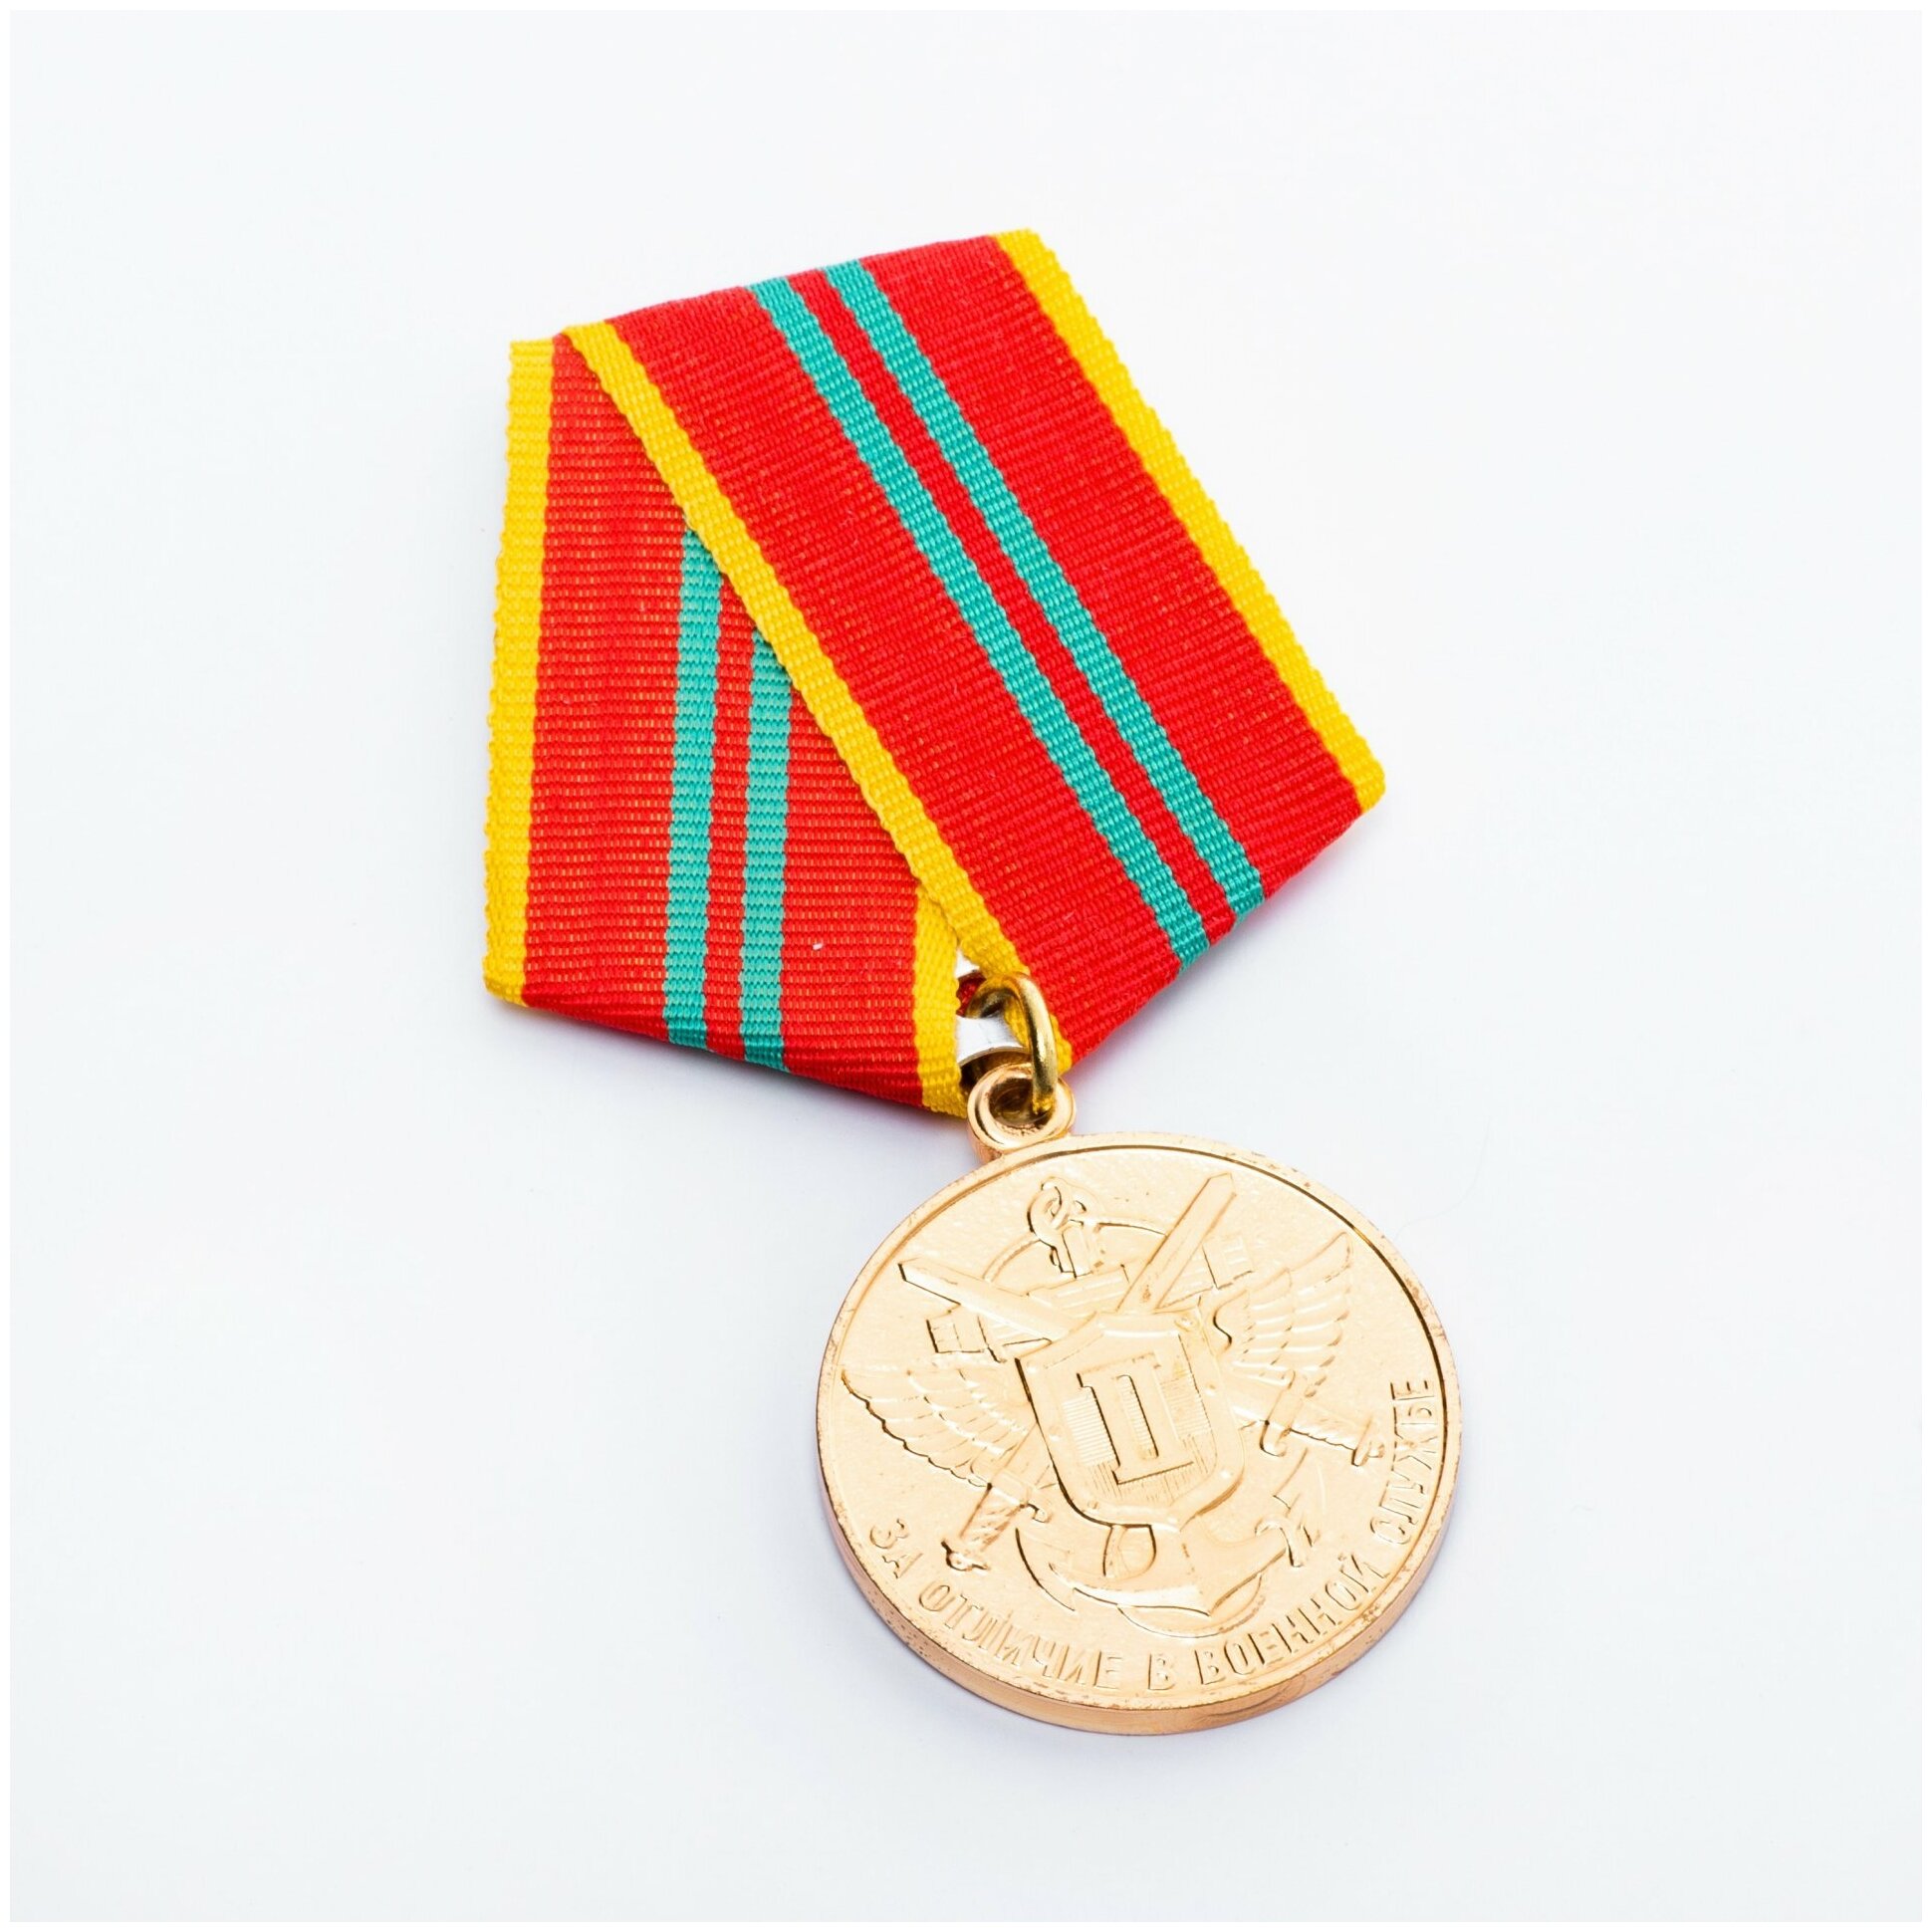 Медаль "За отличие в военной службе" 2 степени (ФПС)